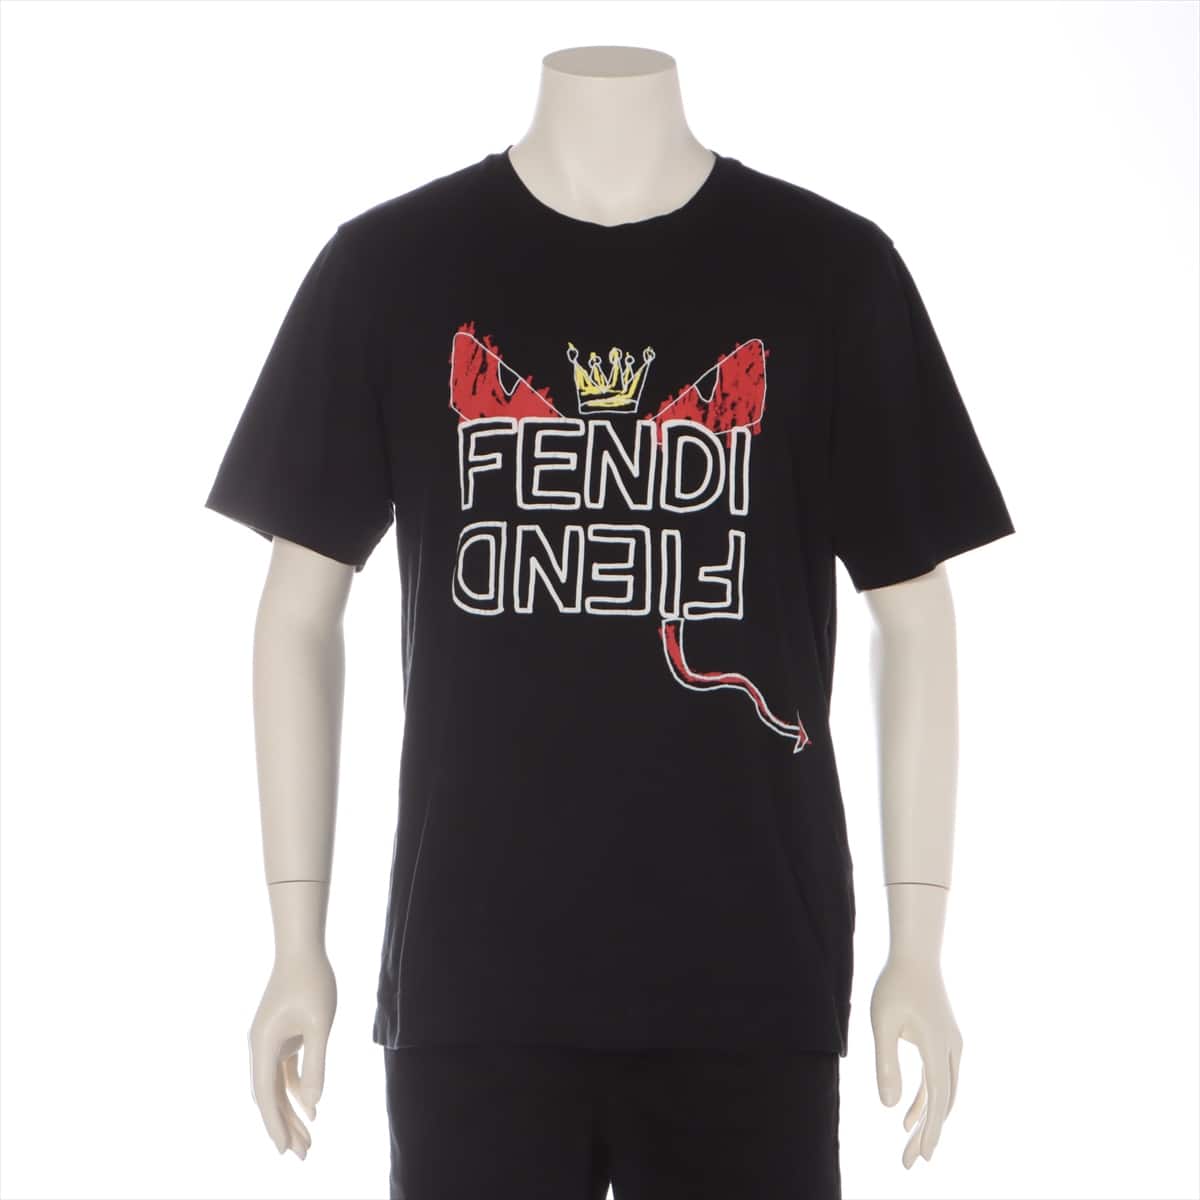 Fendi 18 years Cotton T-shirt S Men's Black  Monster